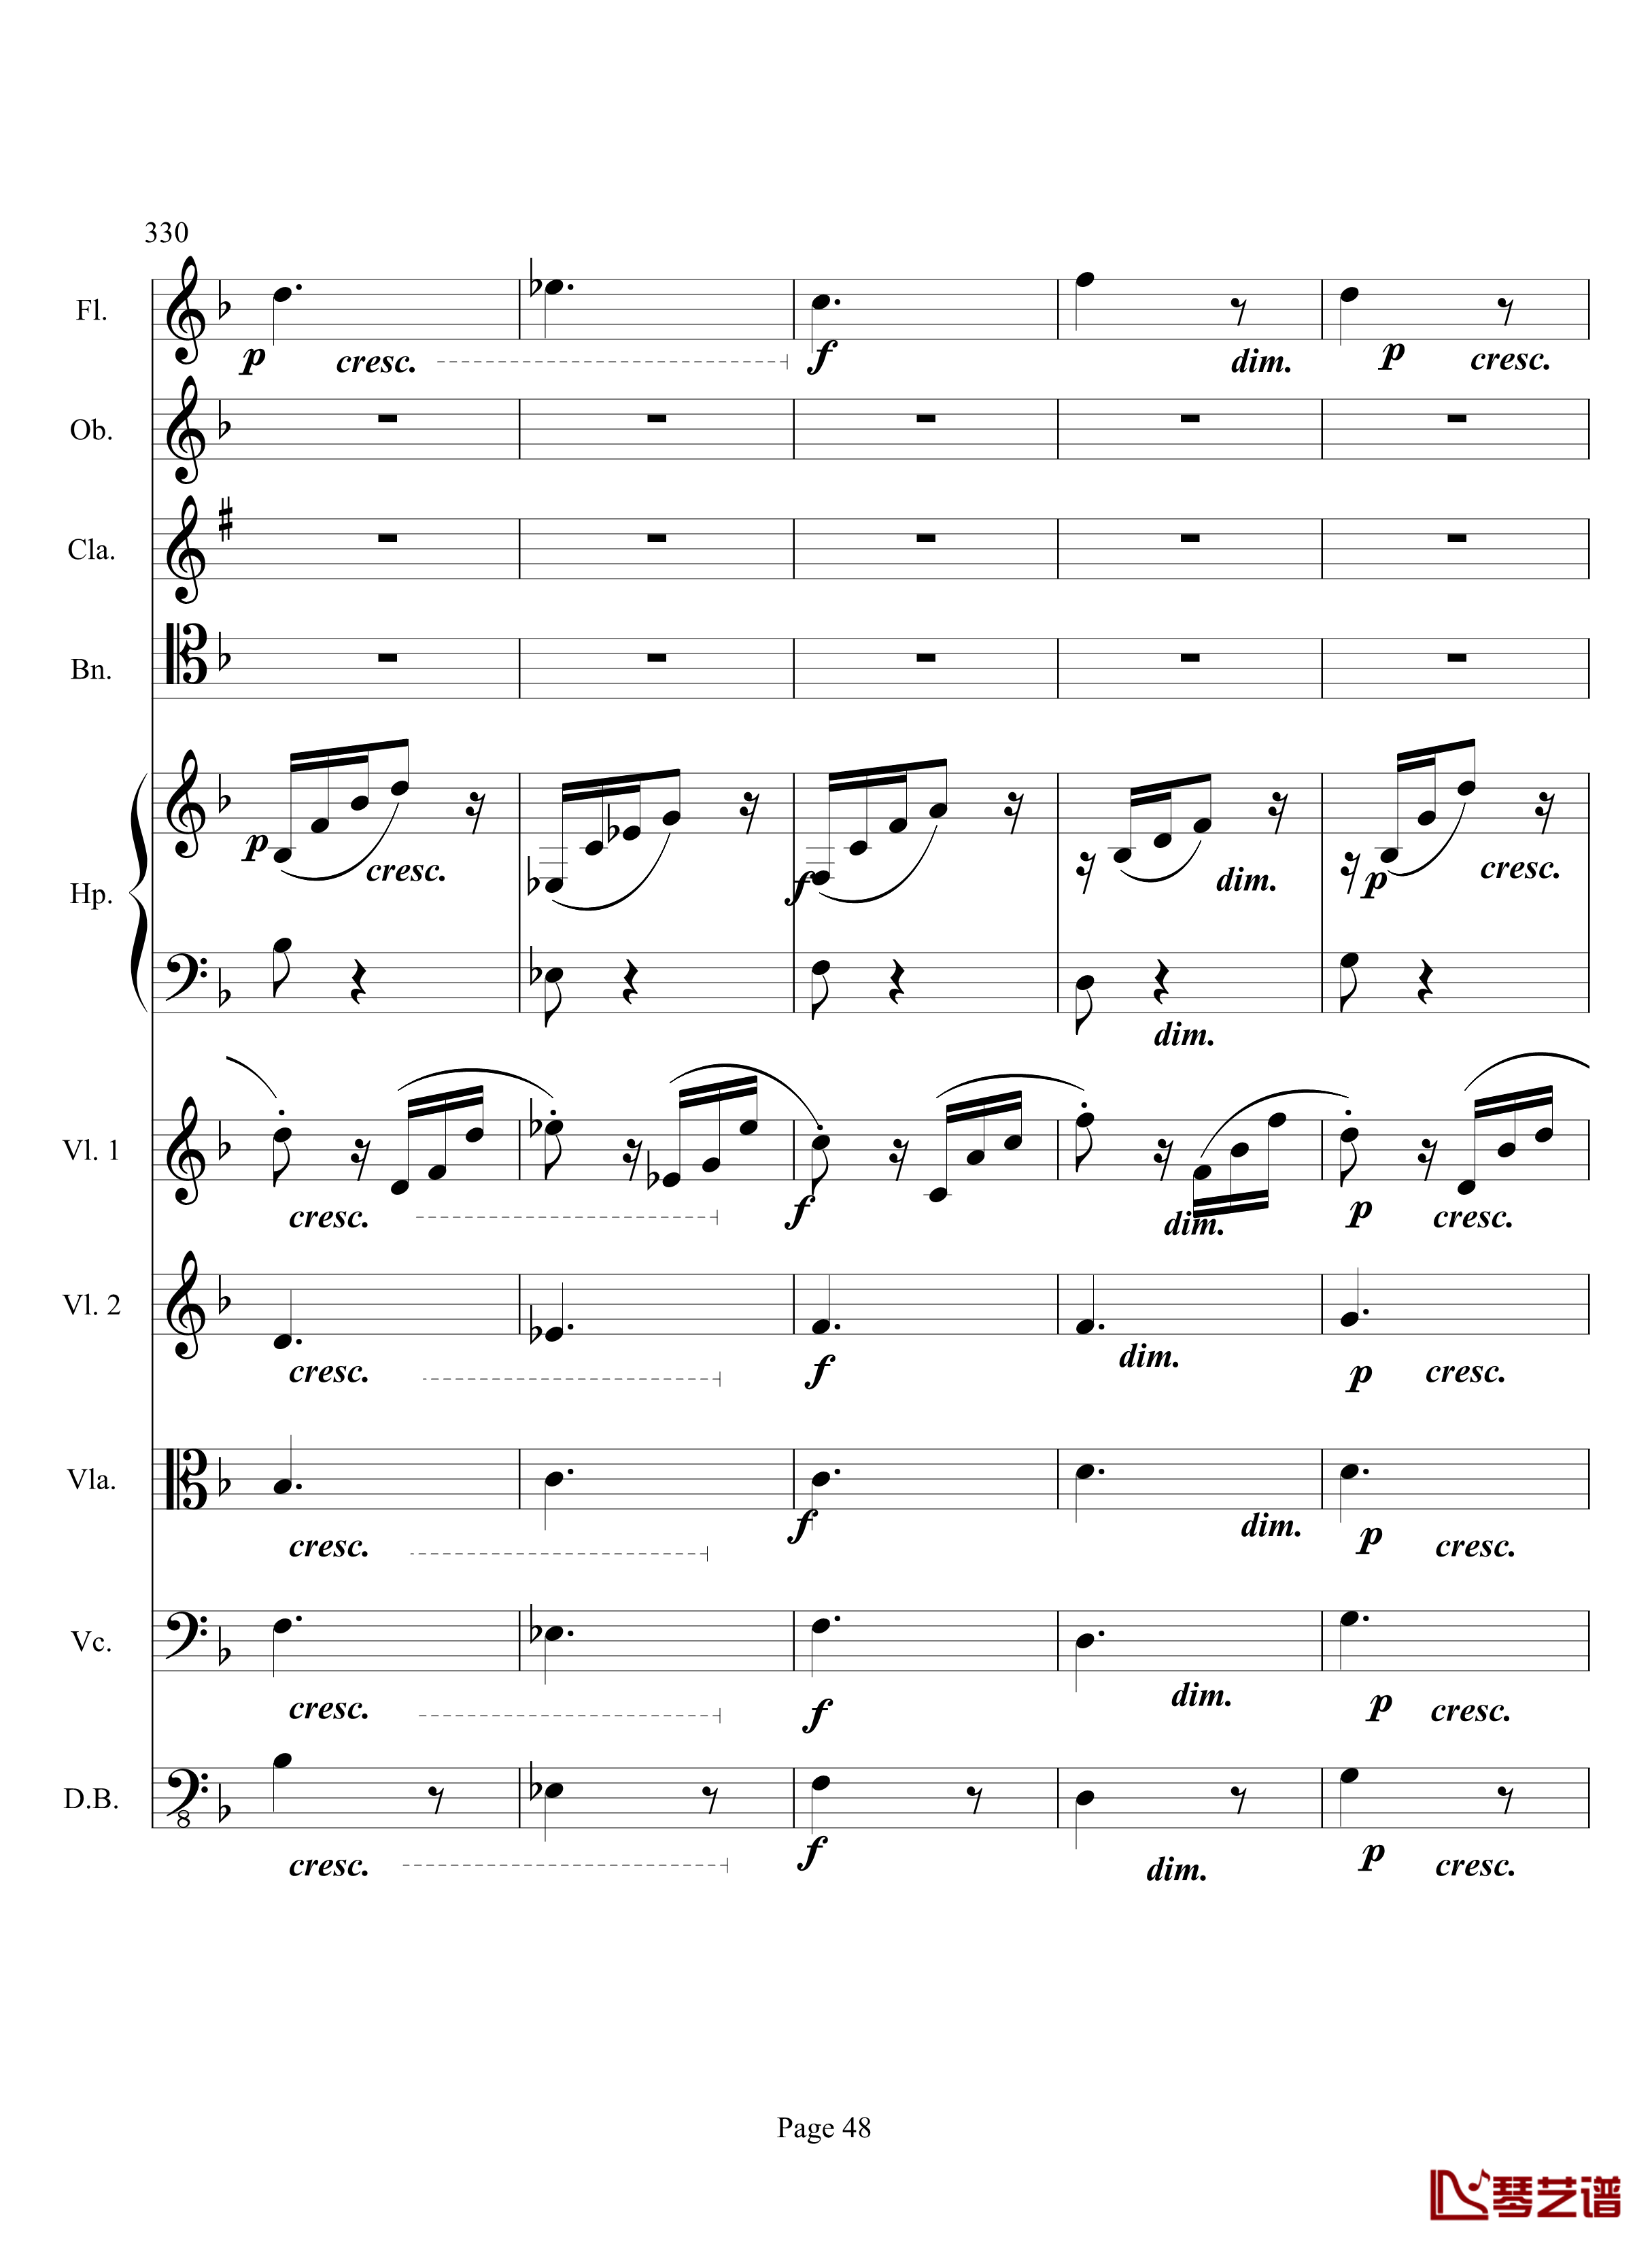 奏鸣曲之交响钢琴谱-第17首-Ⅲ-贝多芬-beethoven48